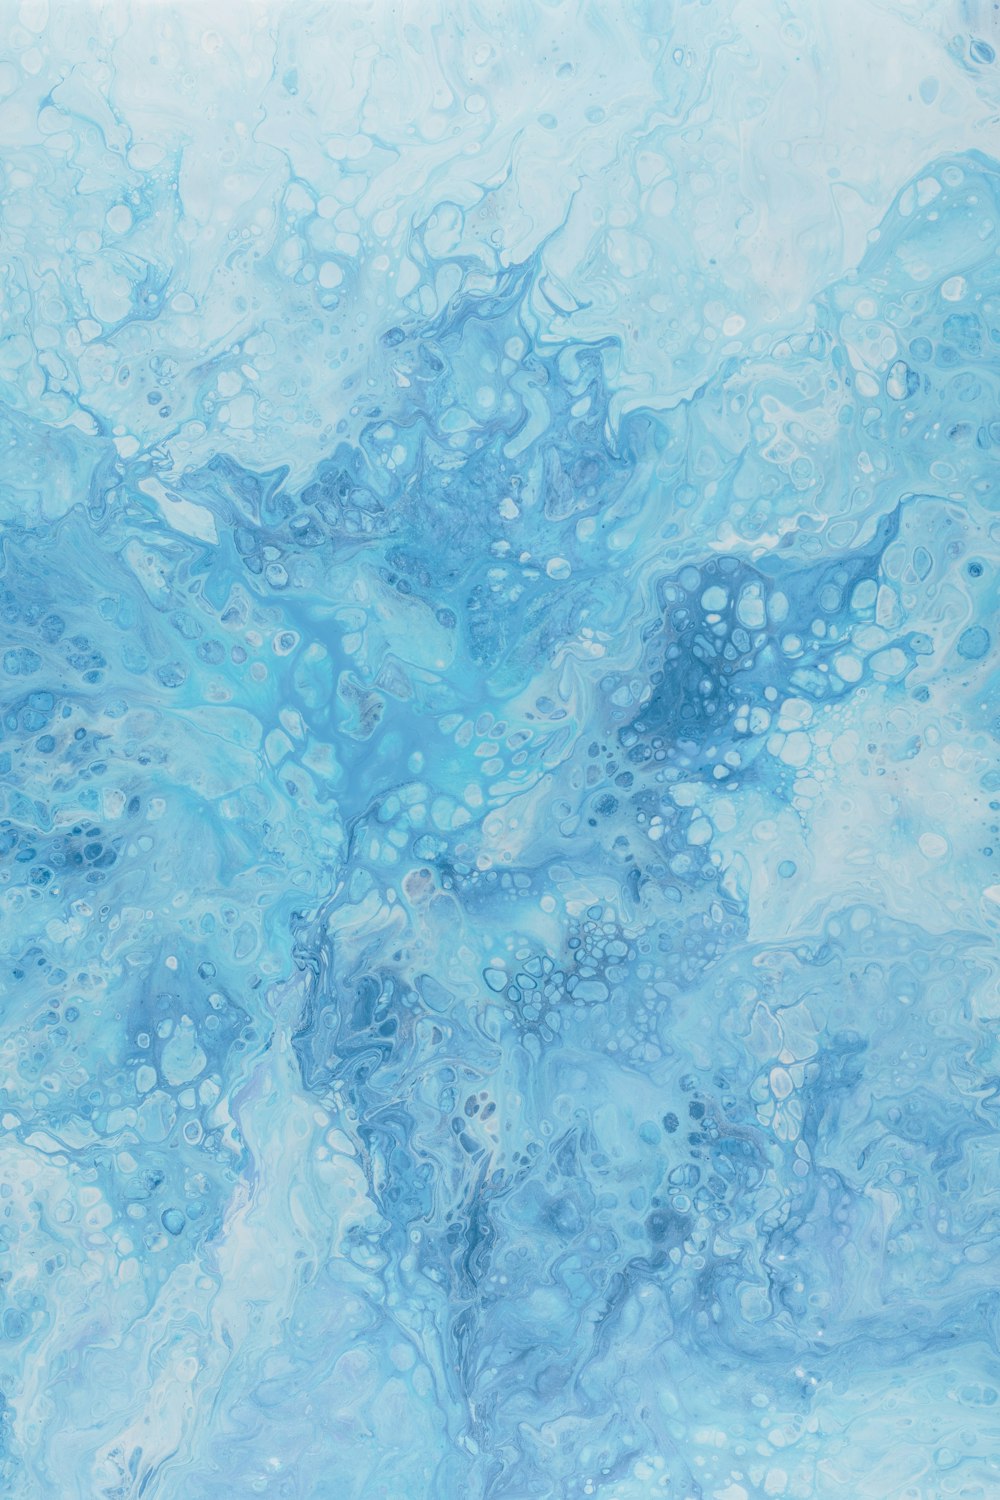 Une peinture abstraite de couleurs bleues et blanches